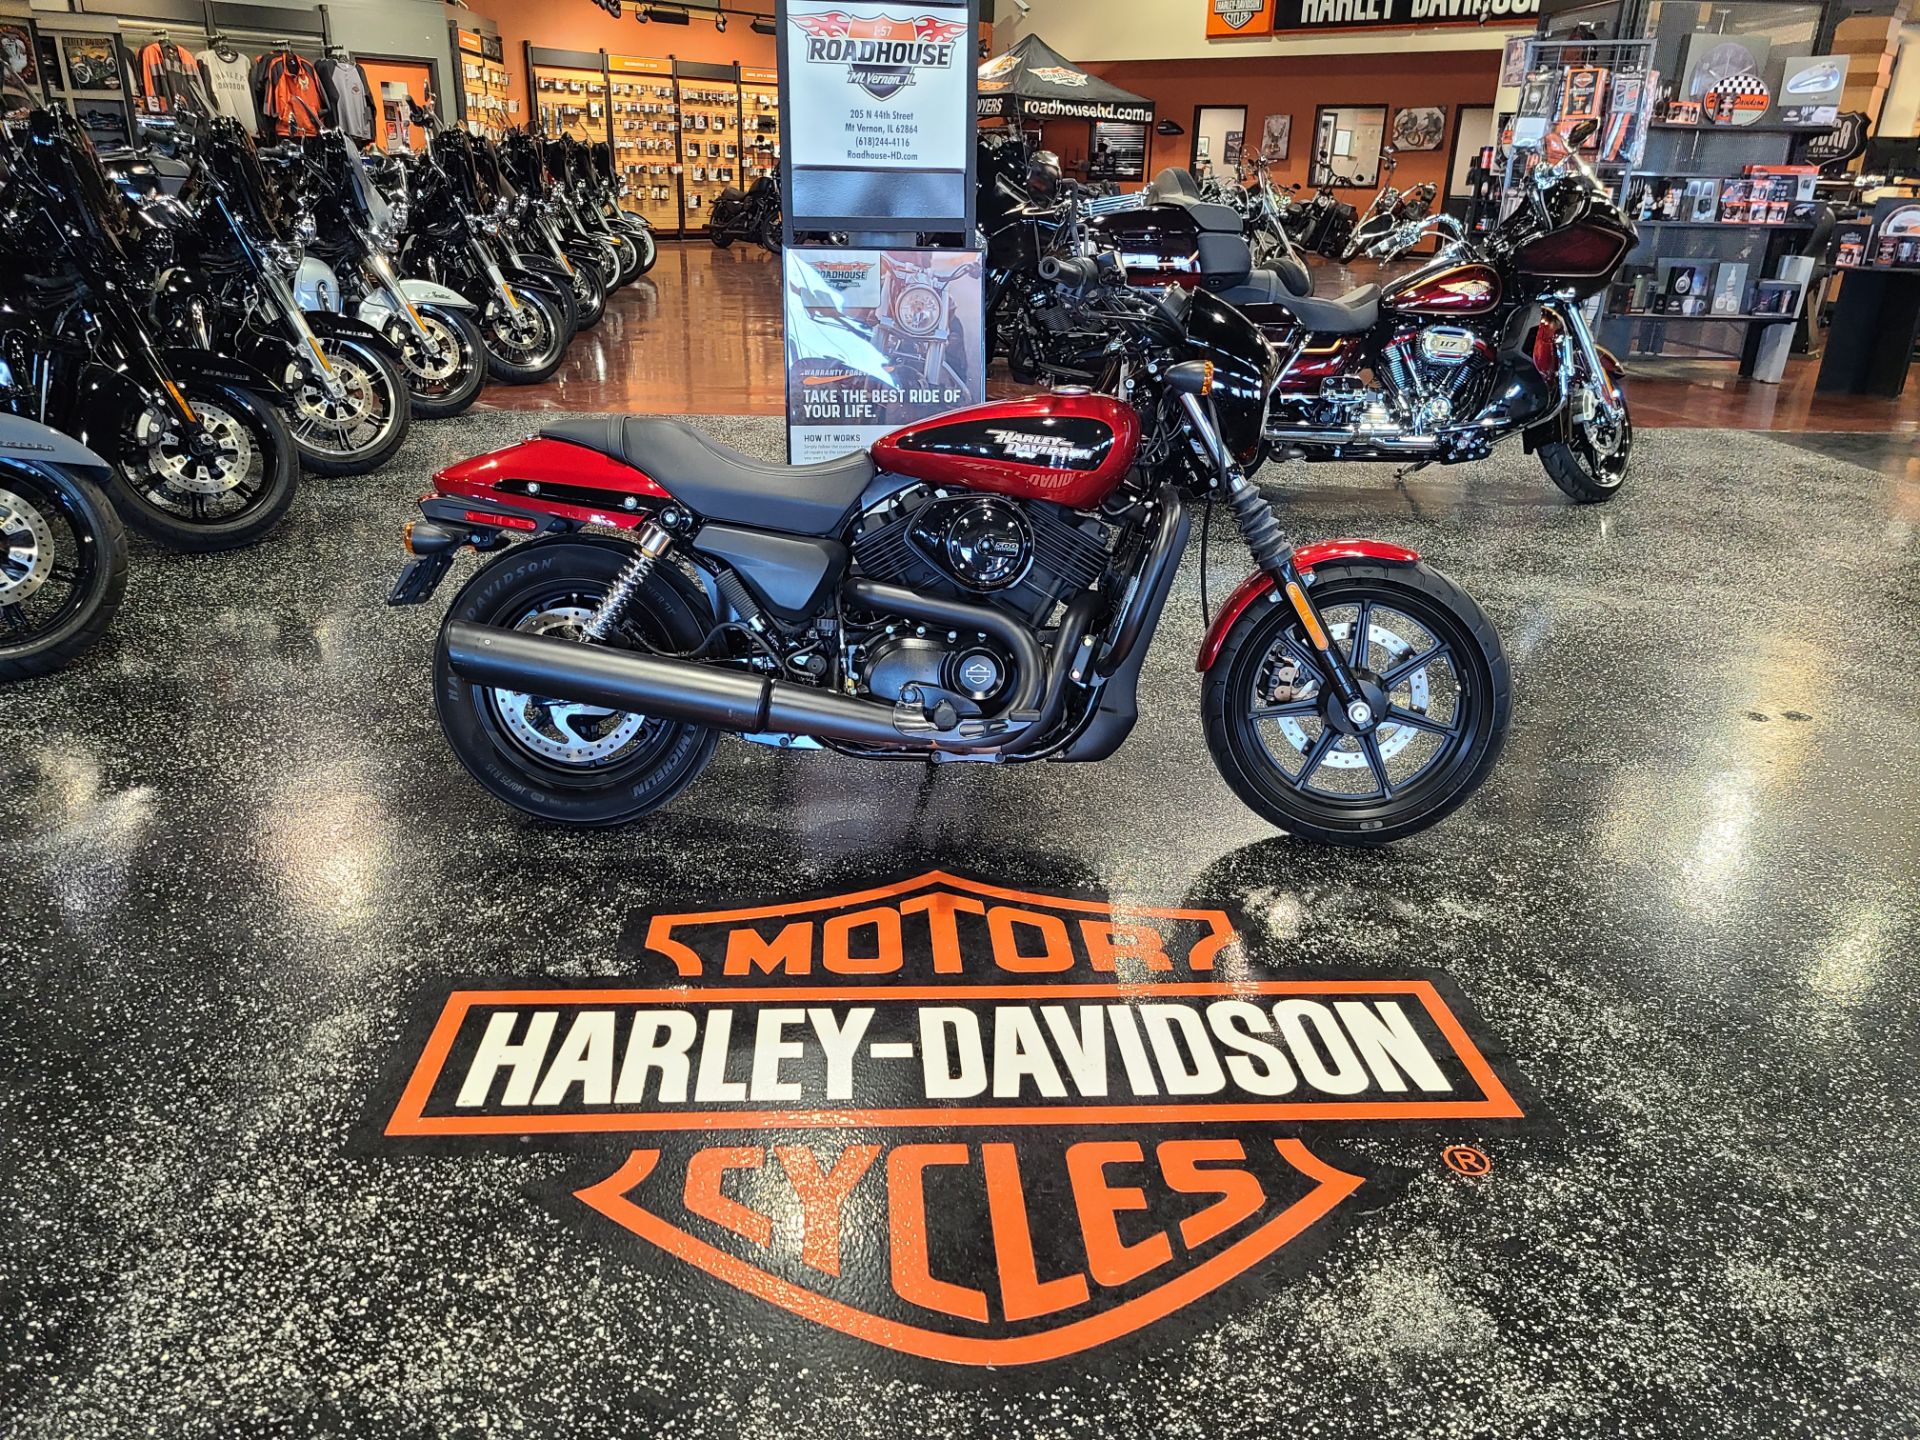 2018 Harley-Davidson 500 STREET in Mount Vernon, Illinois - Photo 1